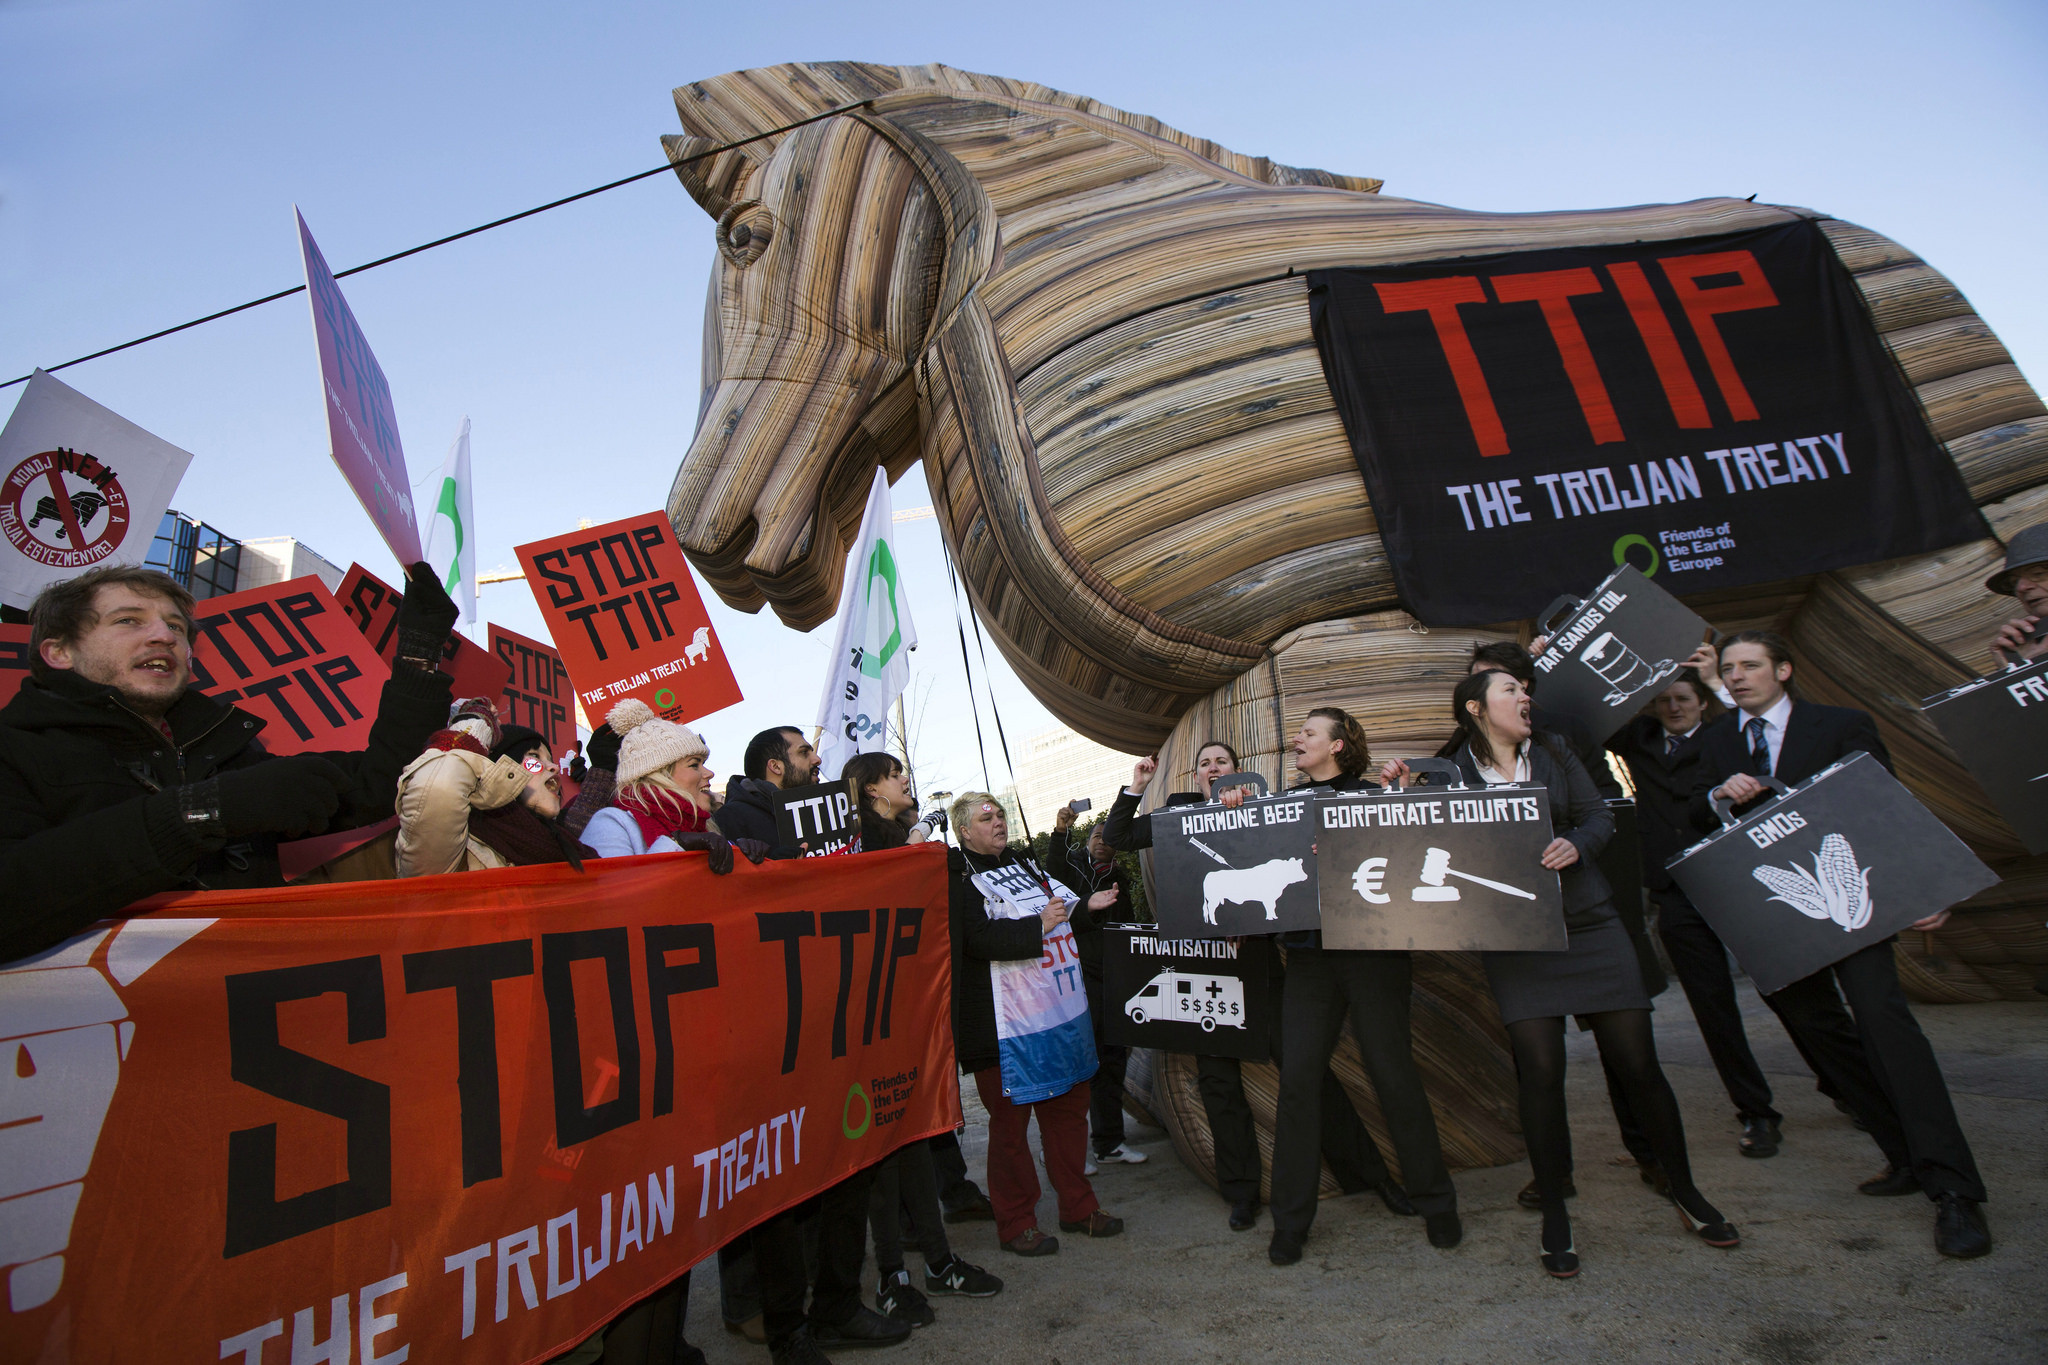 Ο δήμος Ηρακλείου αυτο-ανακηρύχτηκε ελεύθερη ζώνη από τις συμφωνίες TTIP-CETA